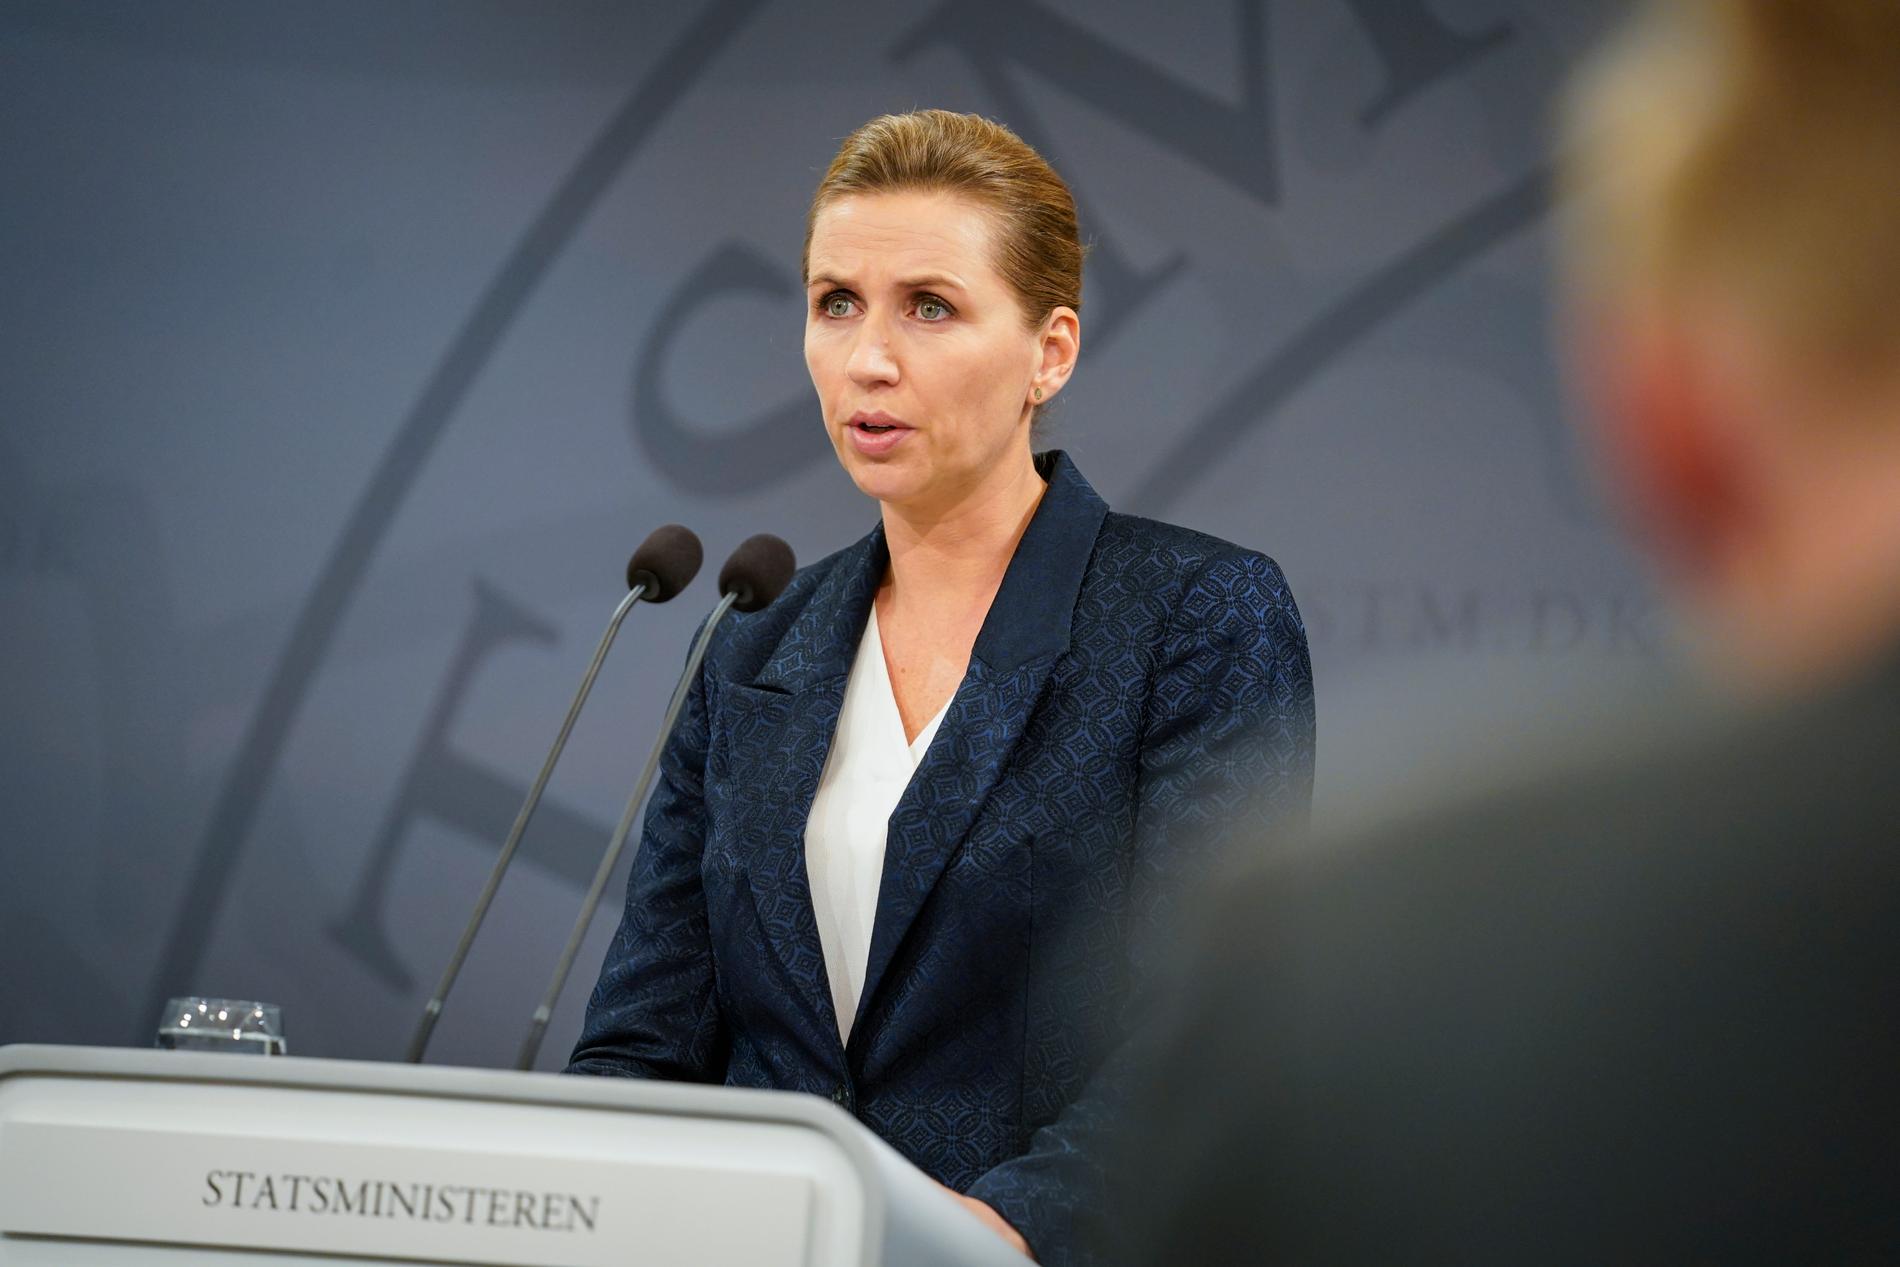 Statsminister Mette Frederiksen (S) när hon i fredags klargjorde att nya coronarestriktioner införs i Danmark.